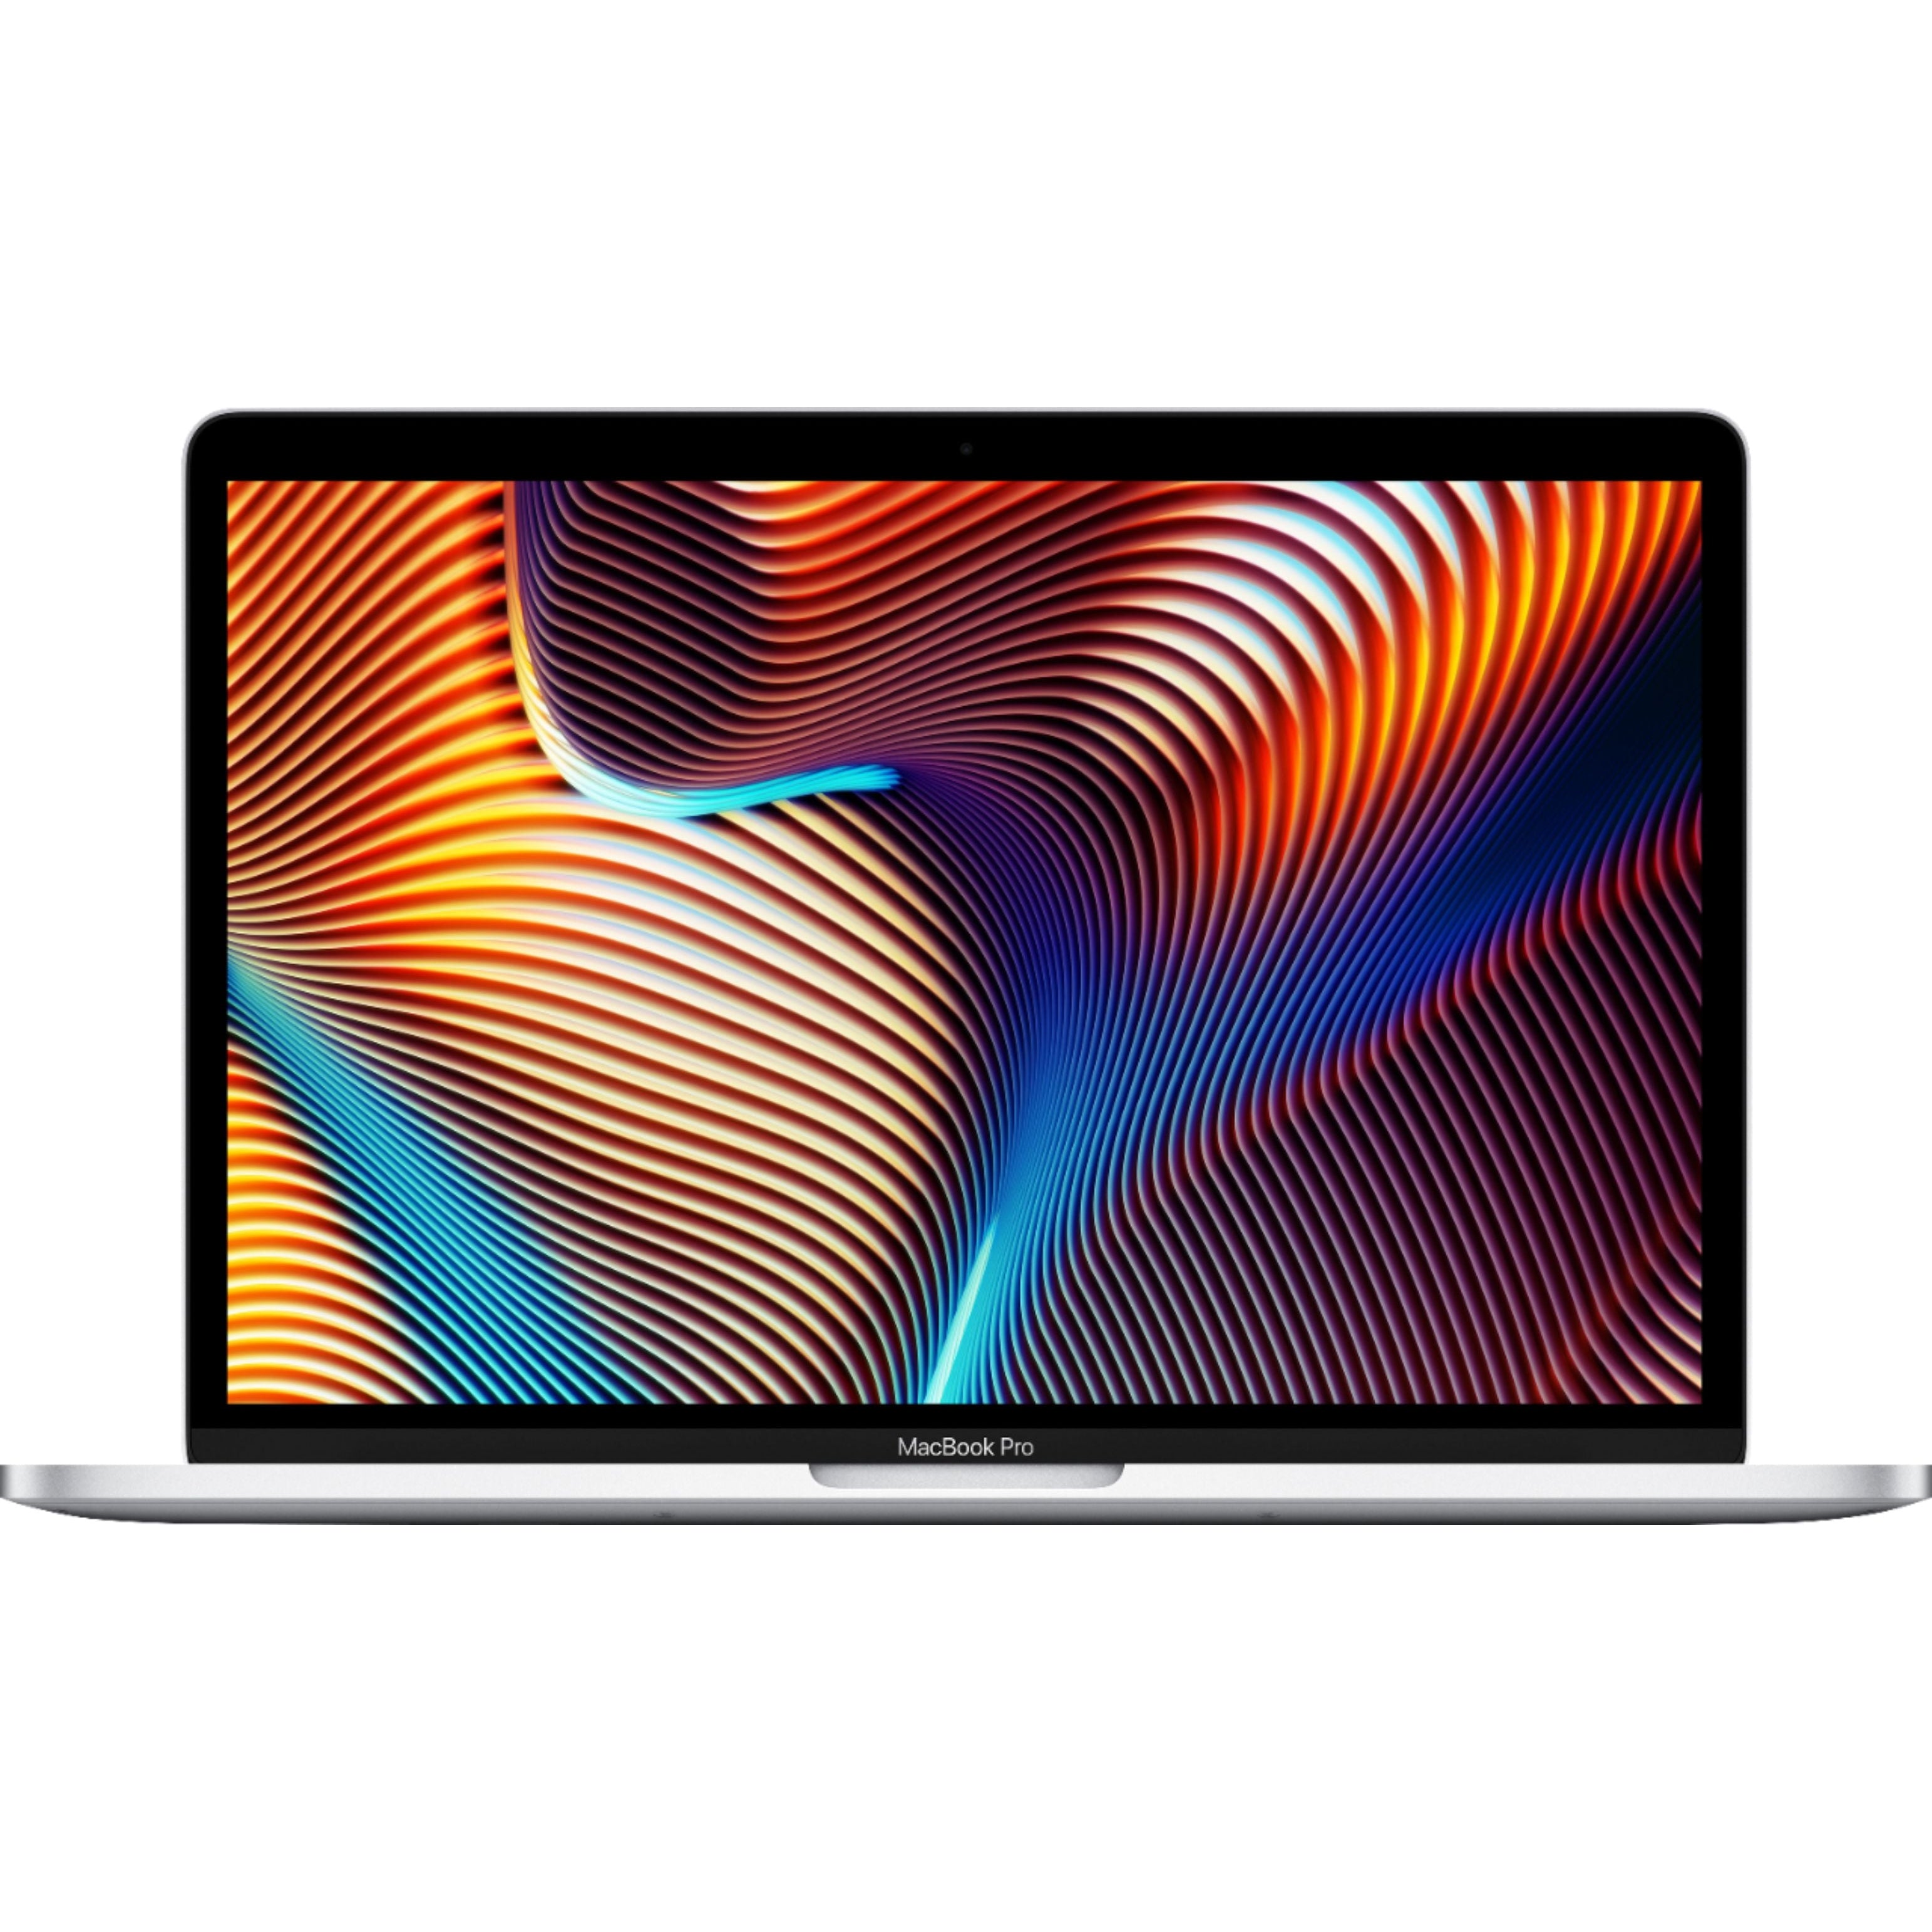 Apple MacBook Pro 13.3'' MUHQ2LL/A (2019) Intel Core i5, 8GB RAM, 128GB SSD, Silver - Refurbished Pristine